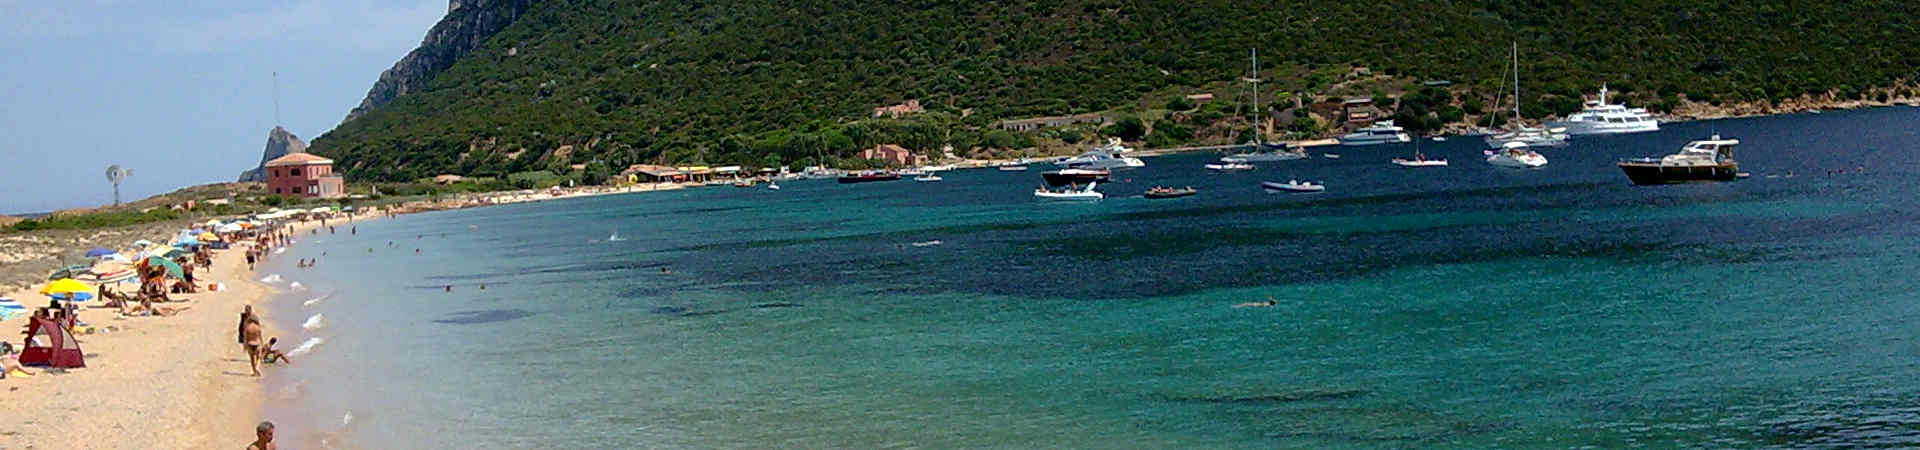 Image ressource du port de destination Olbia pour l'itinéraire du ferry Piombino - Olbia